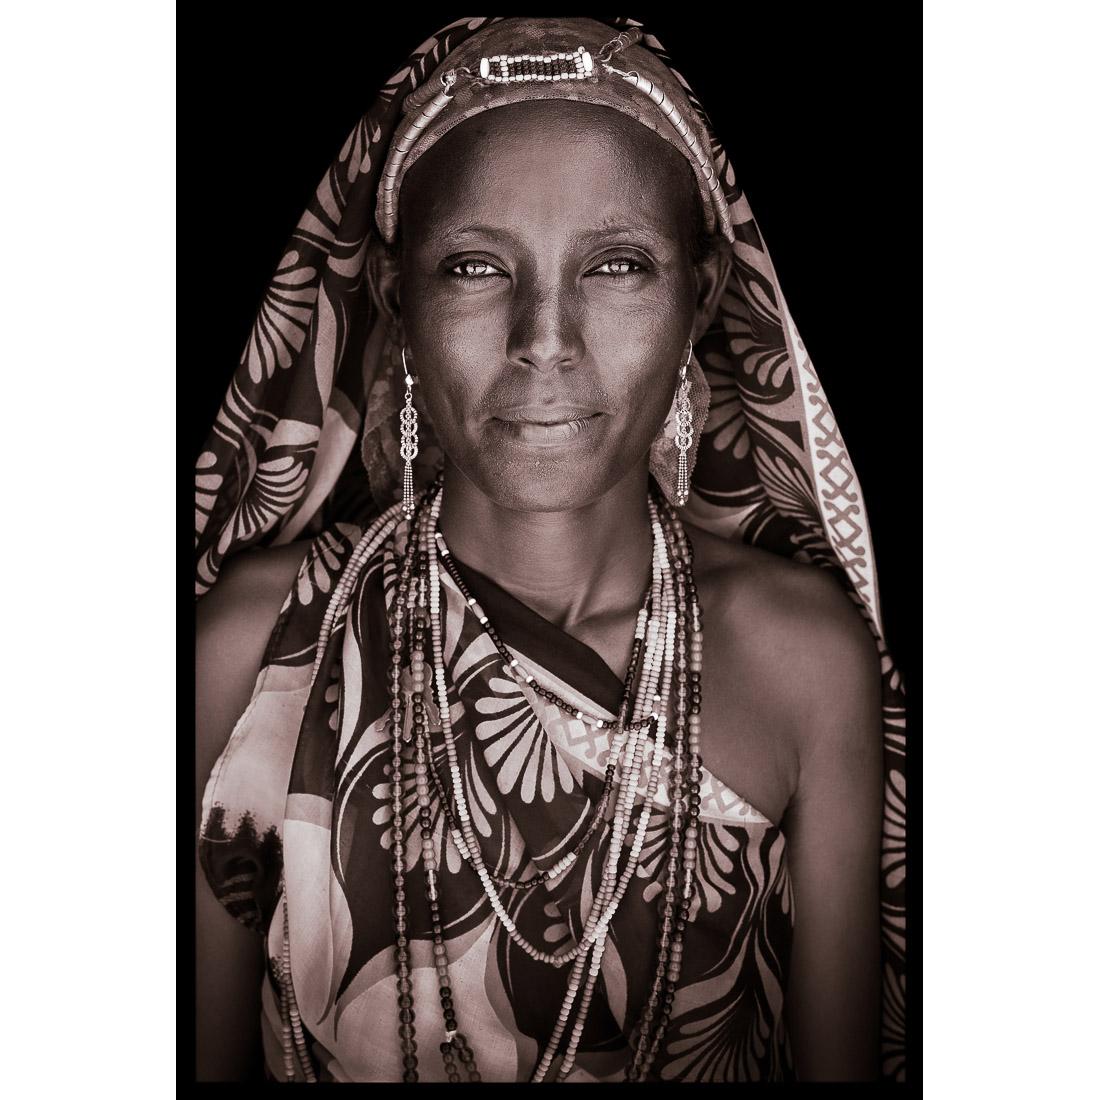 Ein Porträt von Madina, einer Gabbra-Frau aus Nordkenia im Jahr 2019.

John Kennys Arbeiten werden alle vor Ort in einigen der entlegensten Winkel Afrikas gedreht. Seine Bilder werden alle mit natürlichem Licht und in der Alltagskleidung seiner